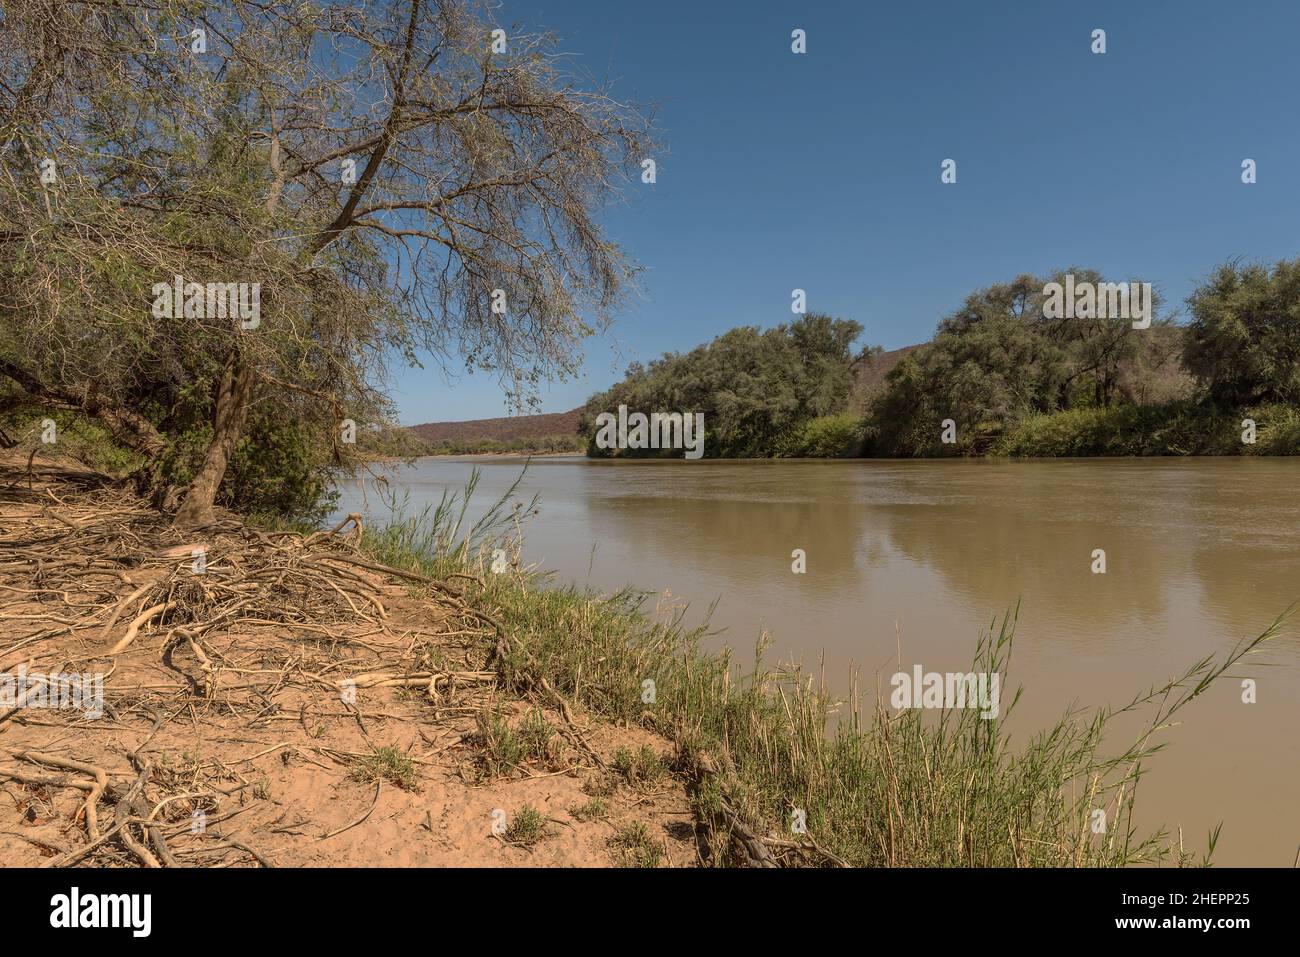 Paesaggio sul fiume Kunene, fiumi di confine della Namibia e Angola, Epupa, Namibia Foto Stock